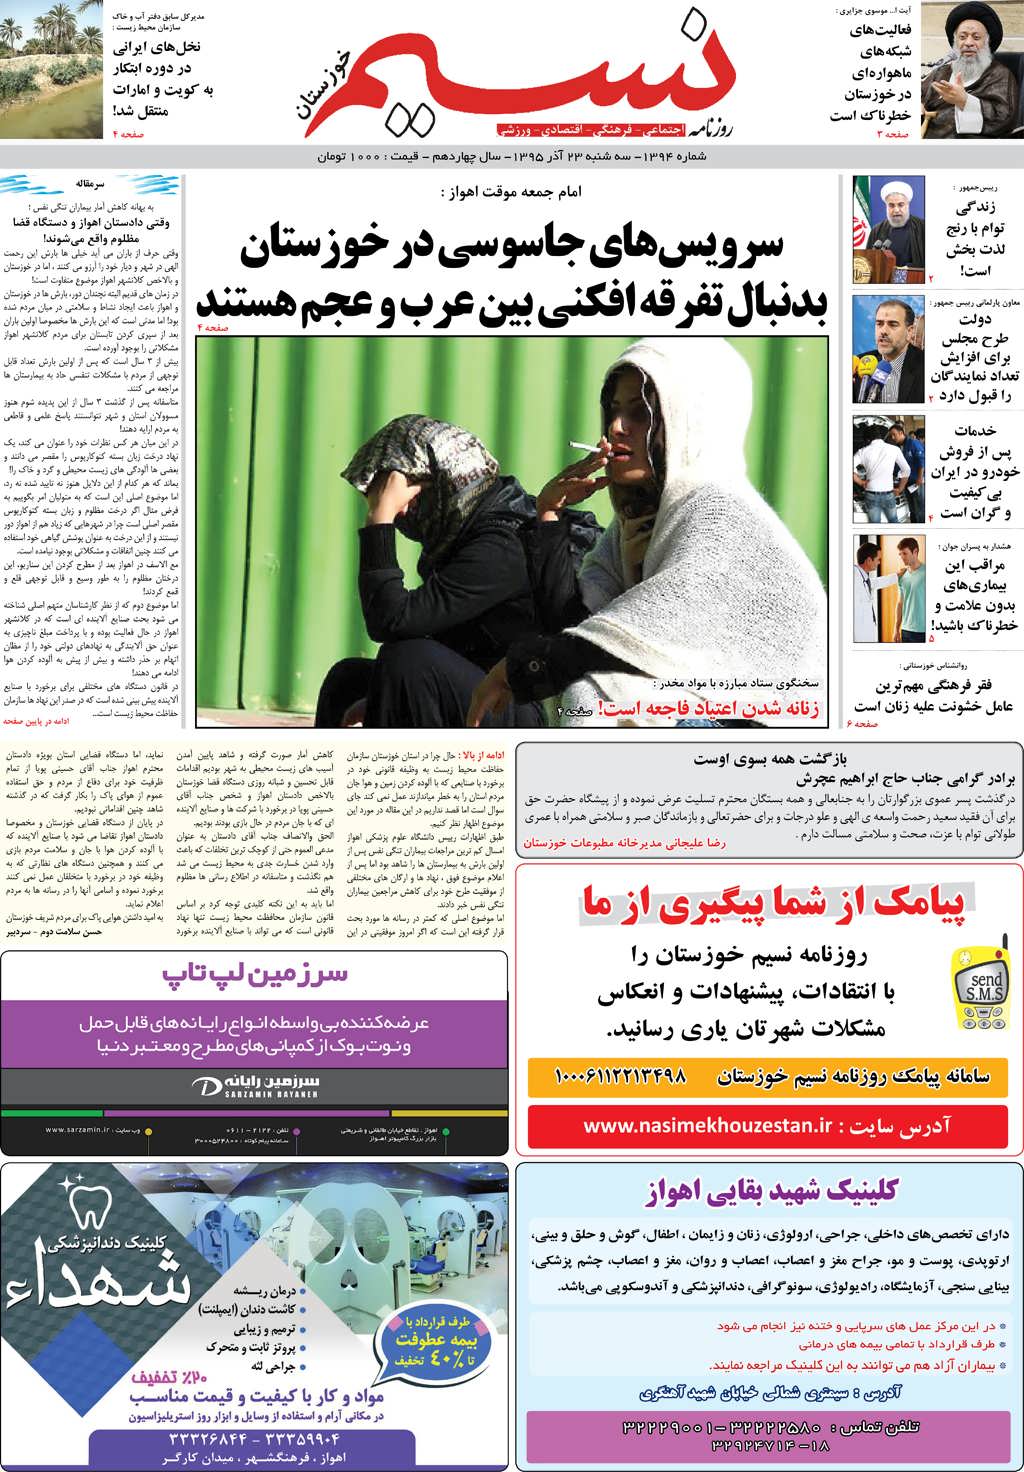 صفحه اصلی روزنامه نسیم شماره 1394